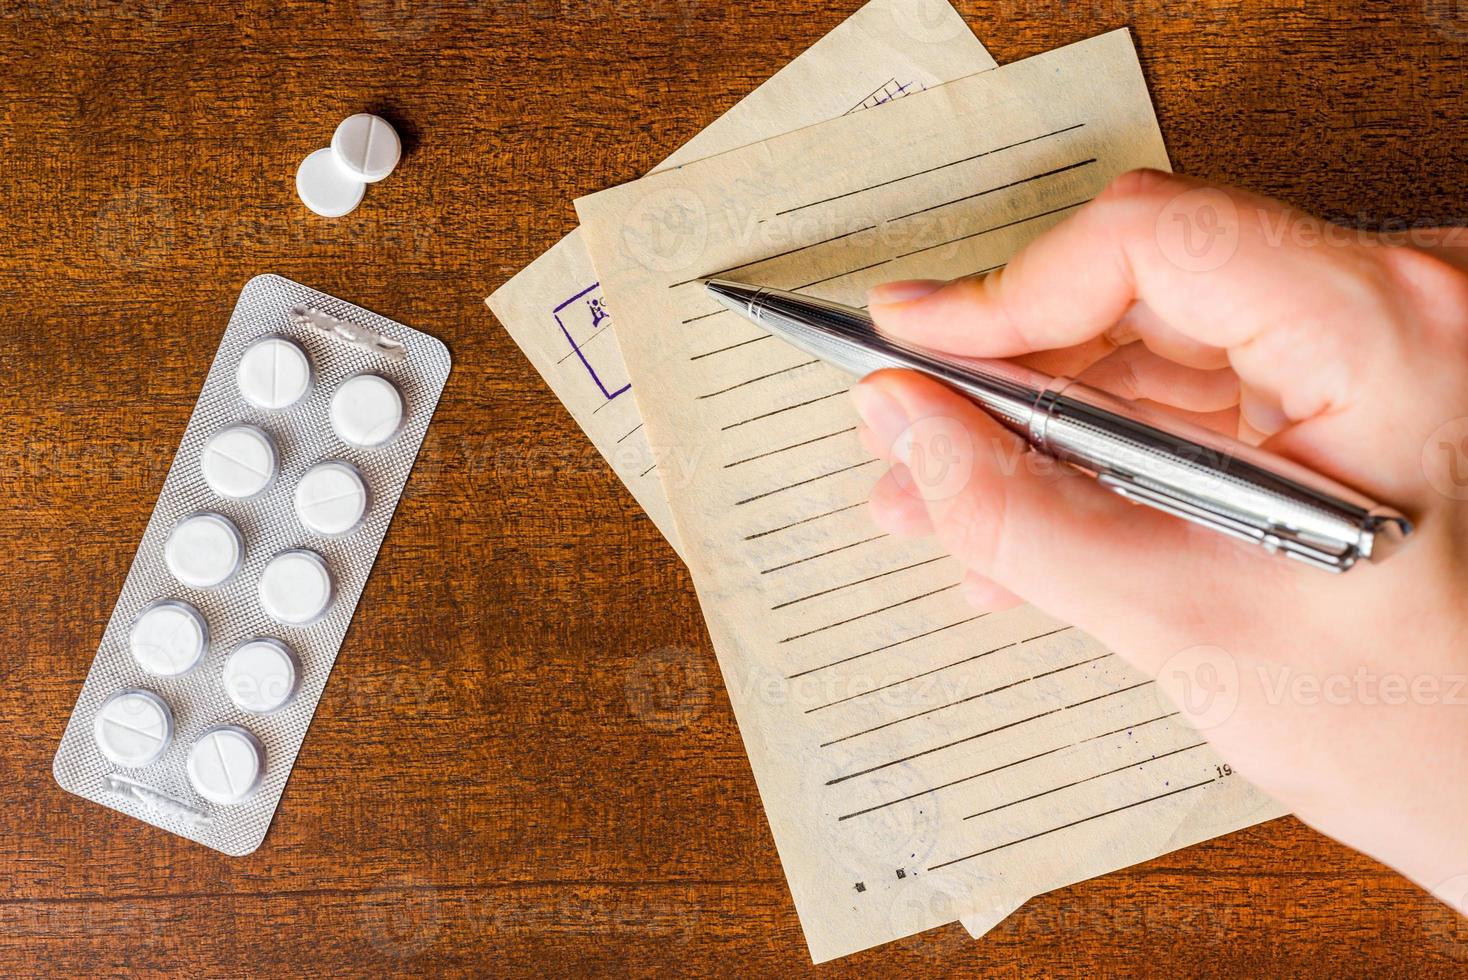 curar la enfermedad, un médico prescribe las tabletas adecuadas foto